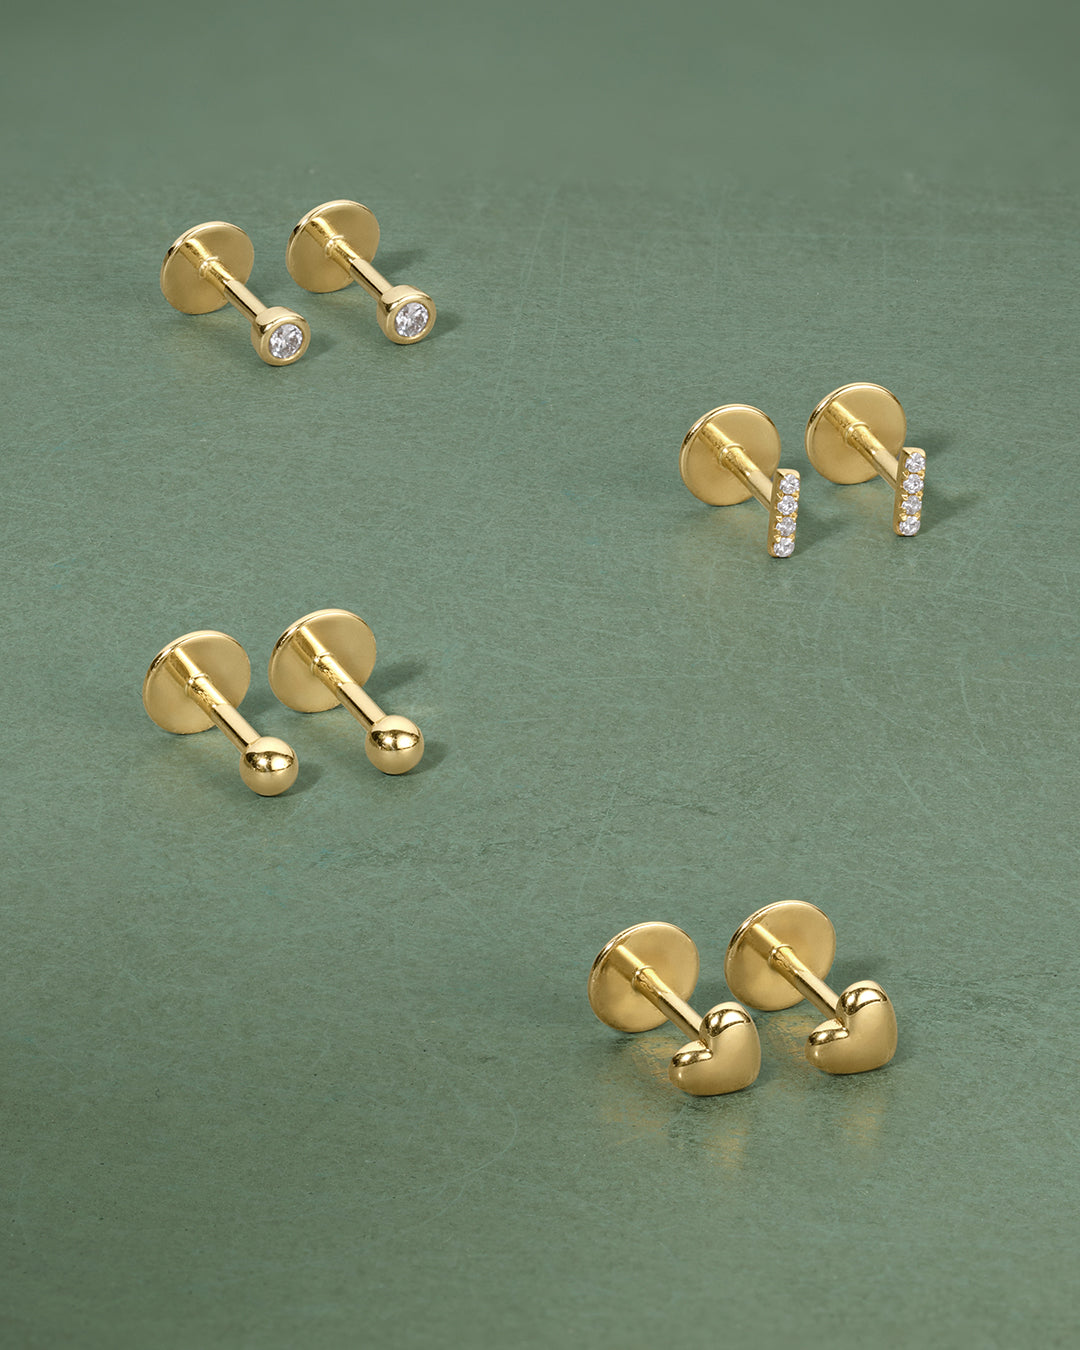 4mm Gold Tube Hoop Earrings – Baby Gold